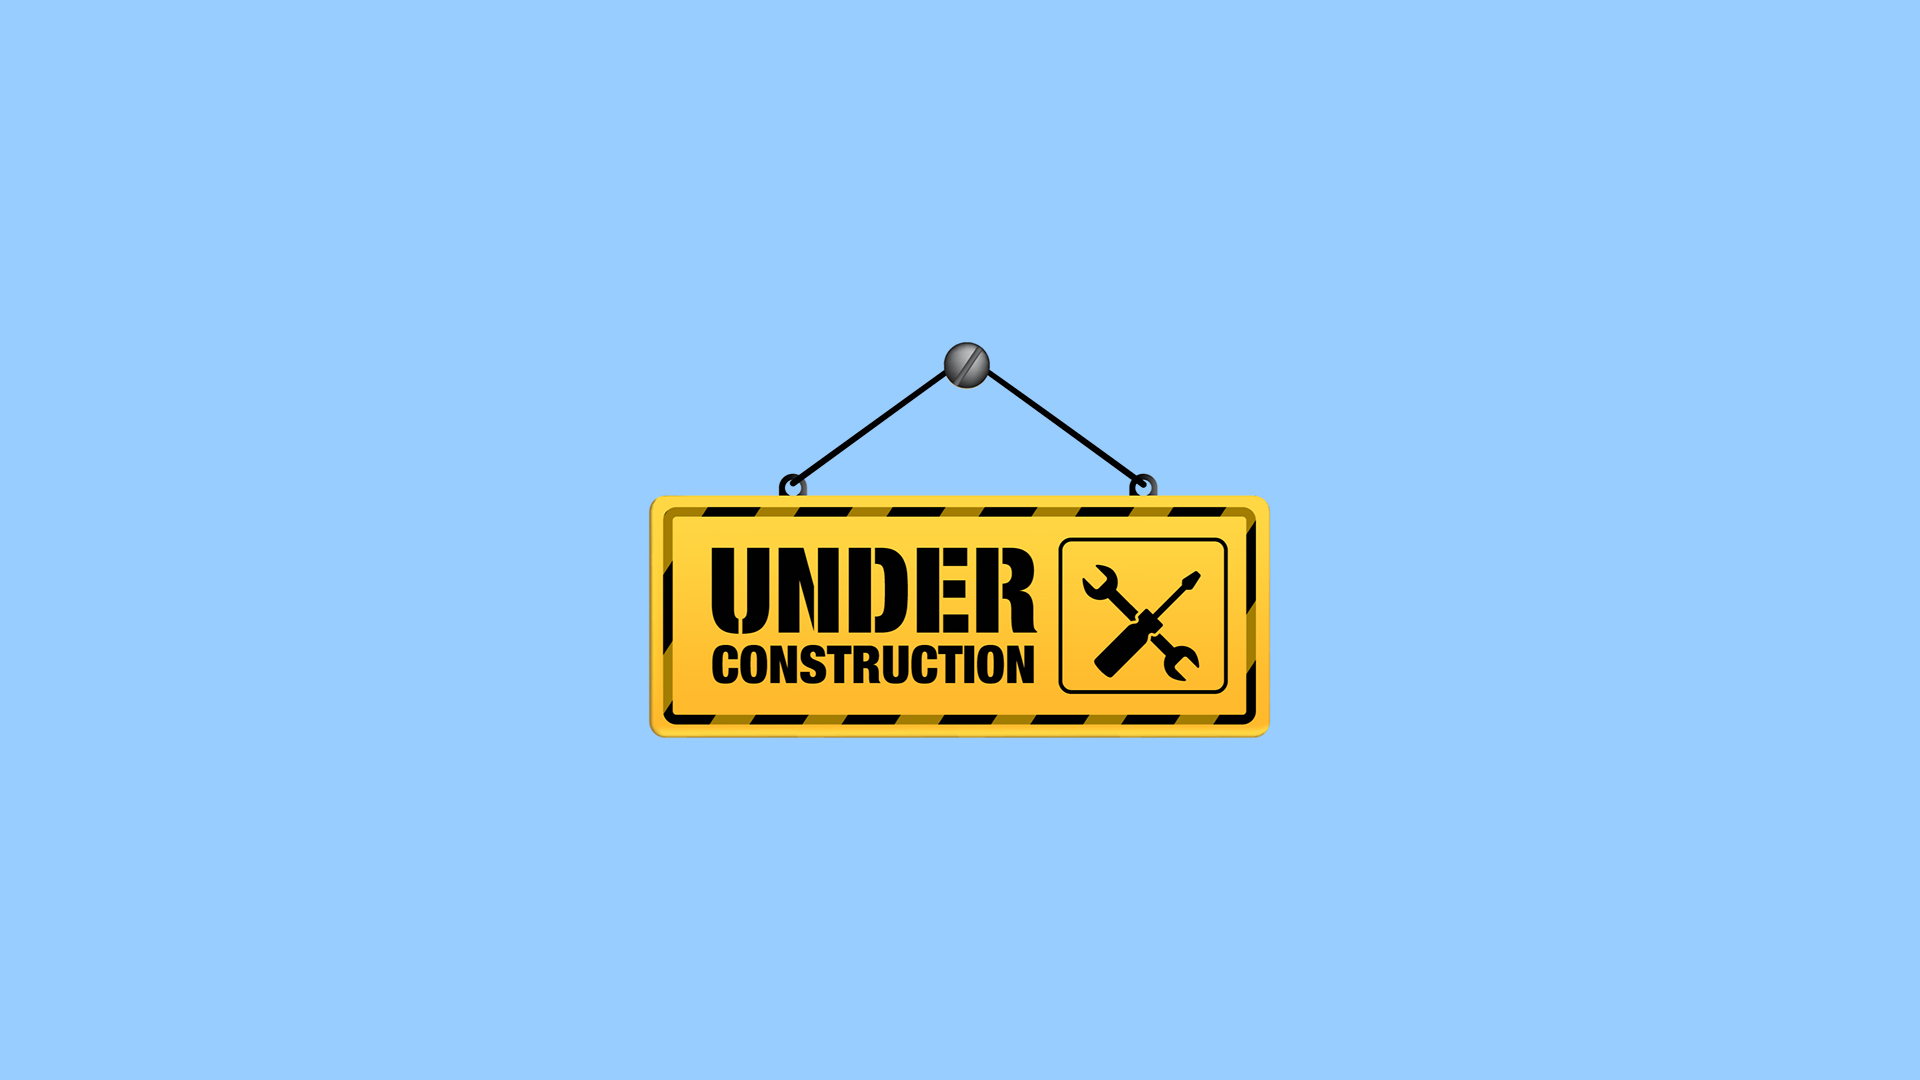 Under Contruction